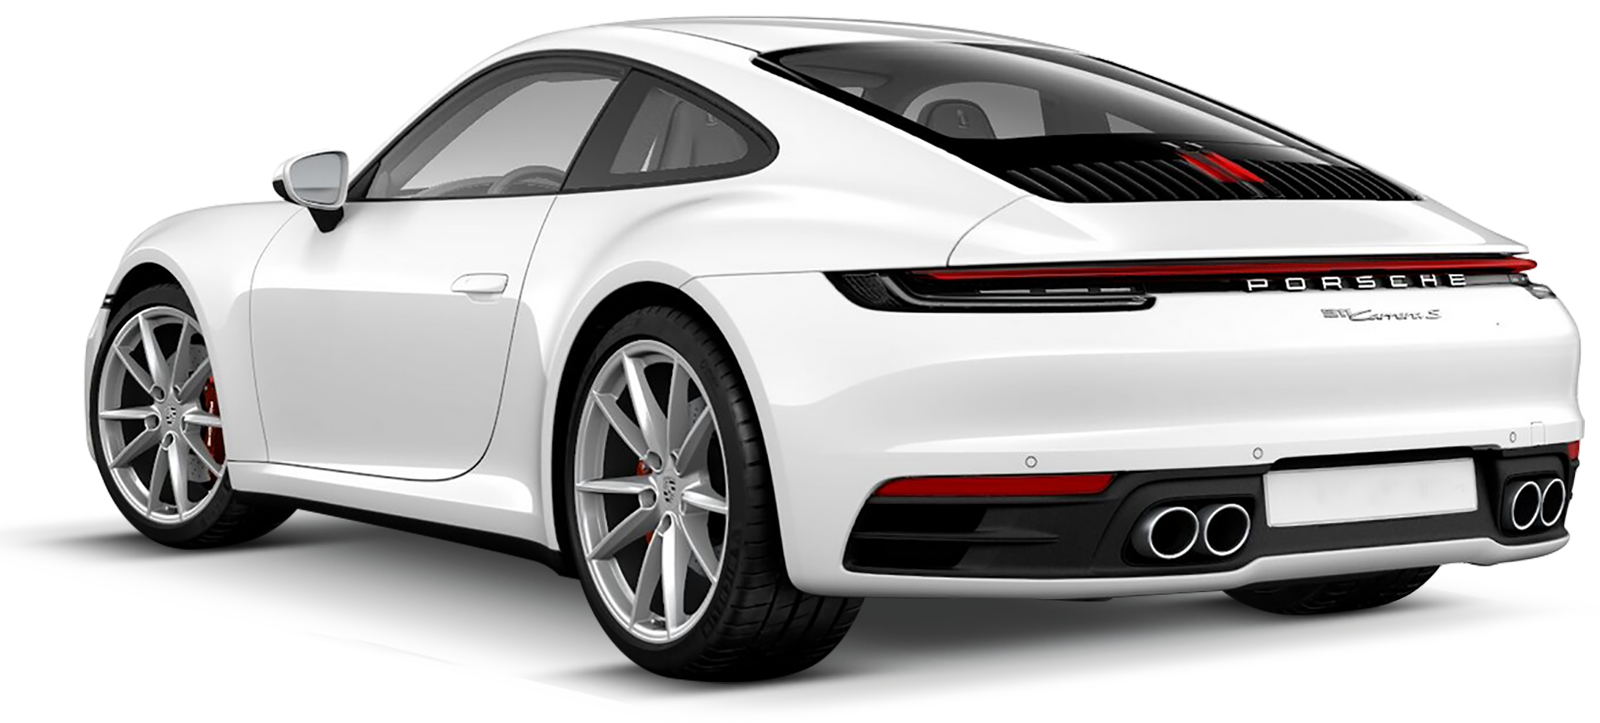 Porsche 911 Carrera 4S prezzo, optional di serie, consumi, foto -  